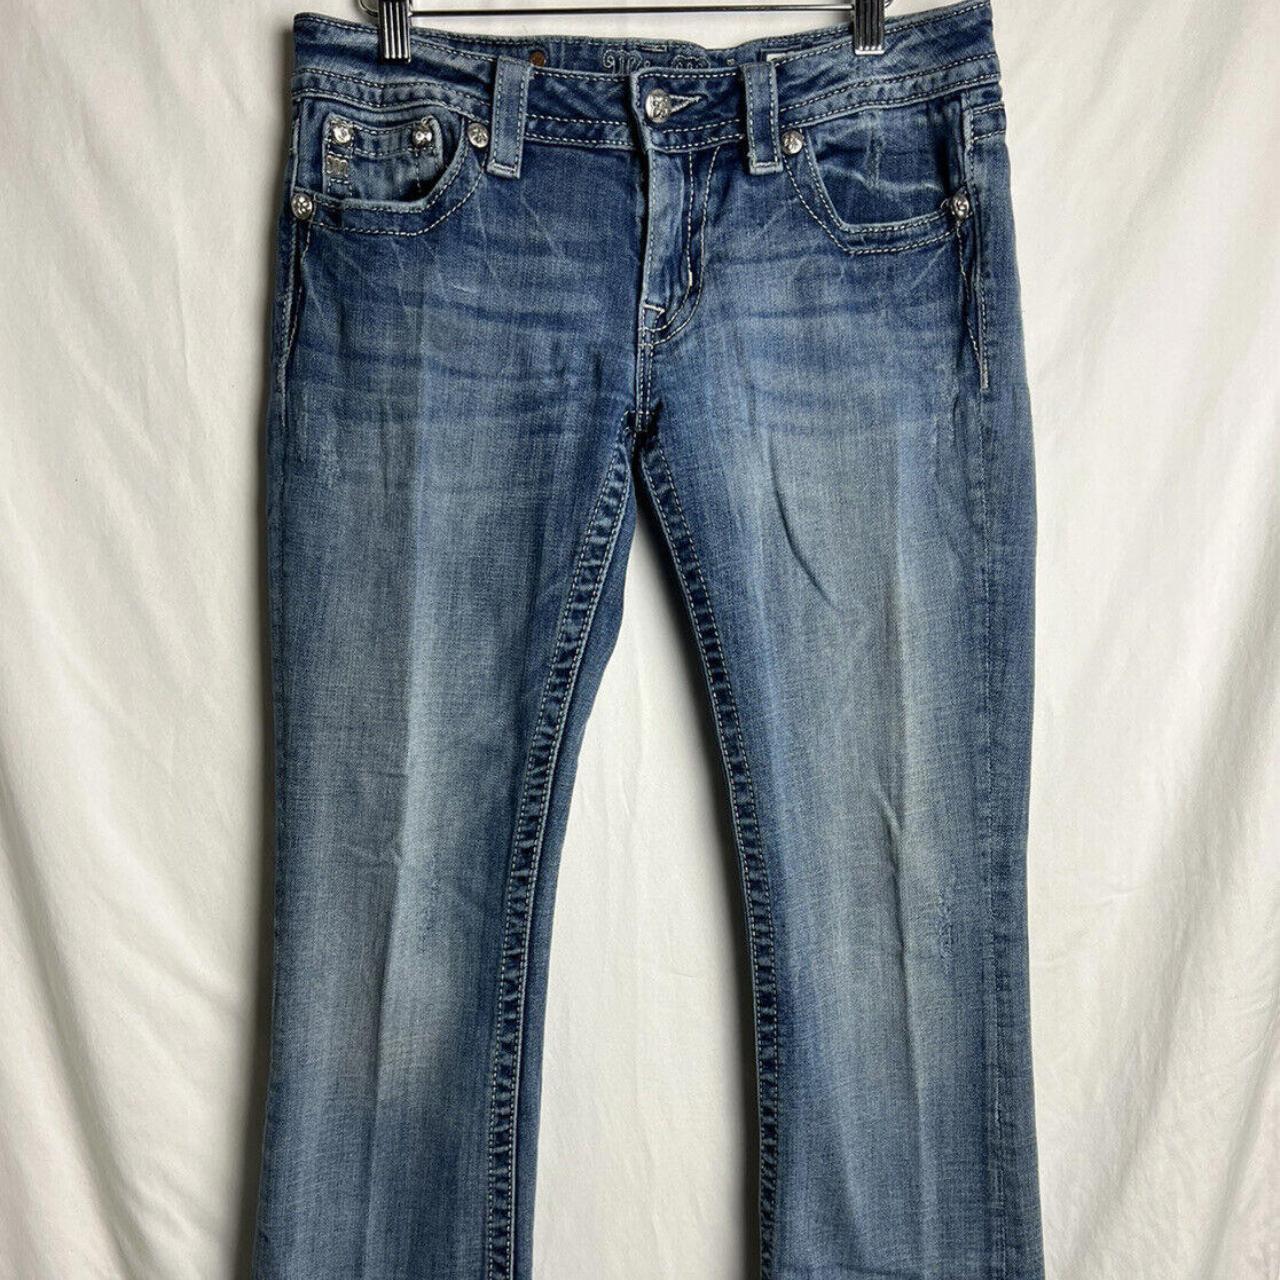 Miss Me Women's Jeans Size 29 Signature Bootcut... - Depop